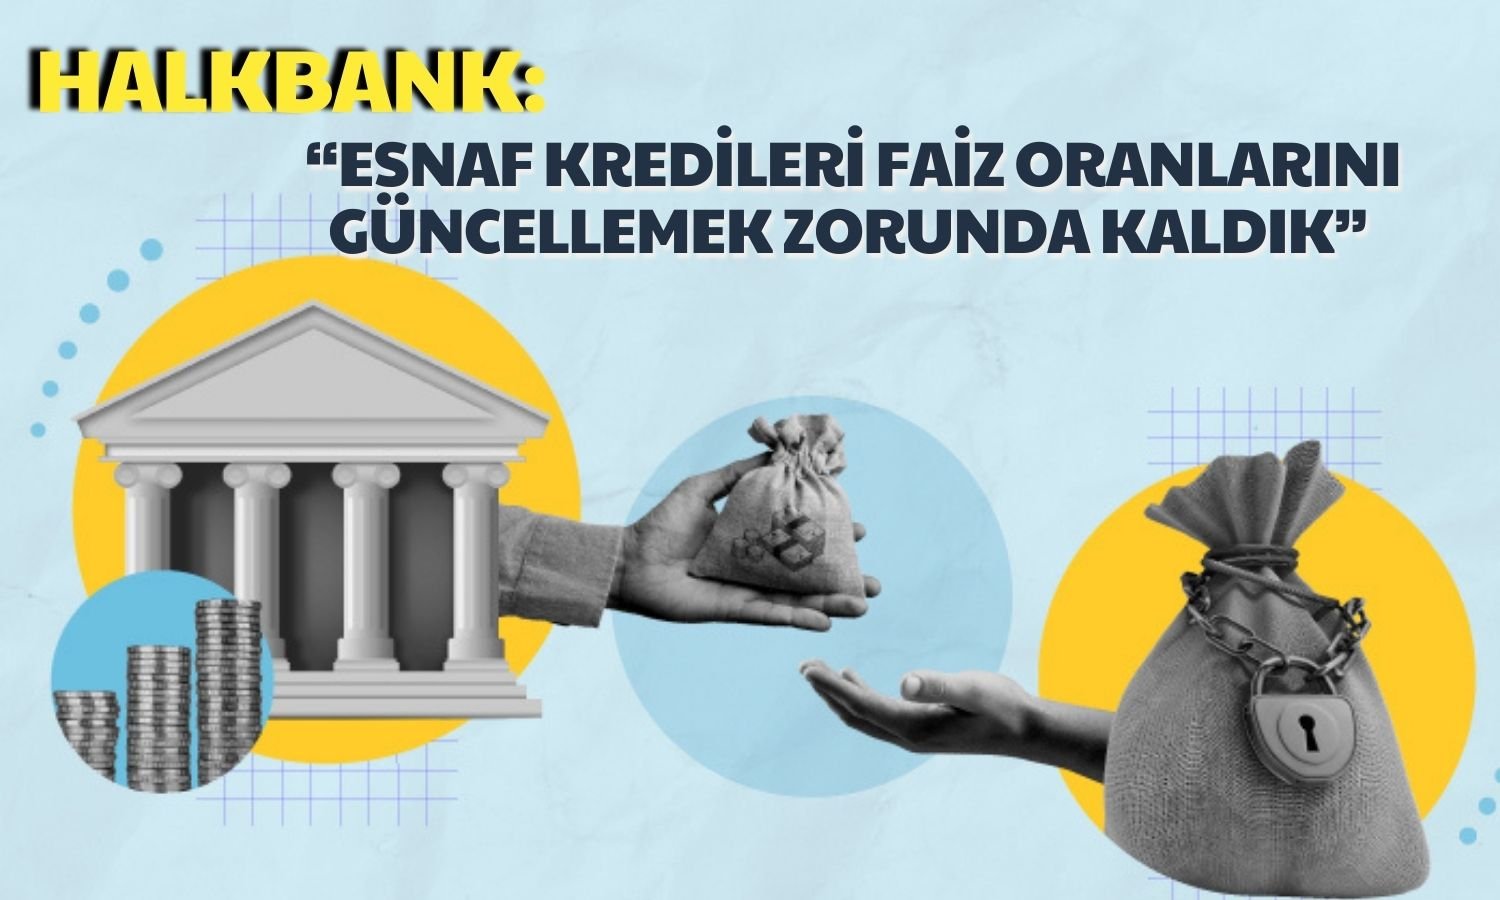 Halkbank’tan Esnaf Kredi Faiz Oranlarına Yönelik Açıklama